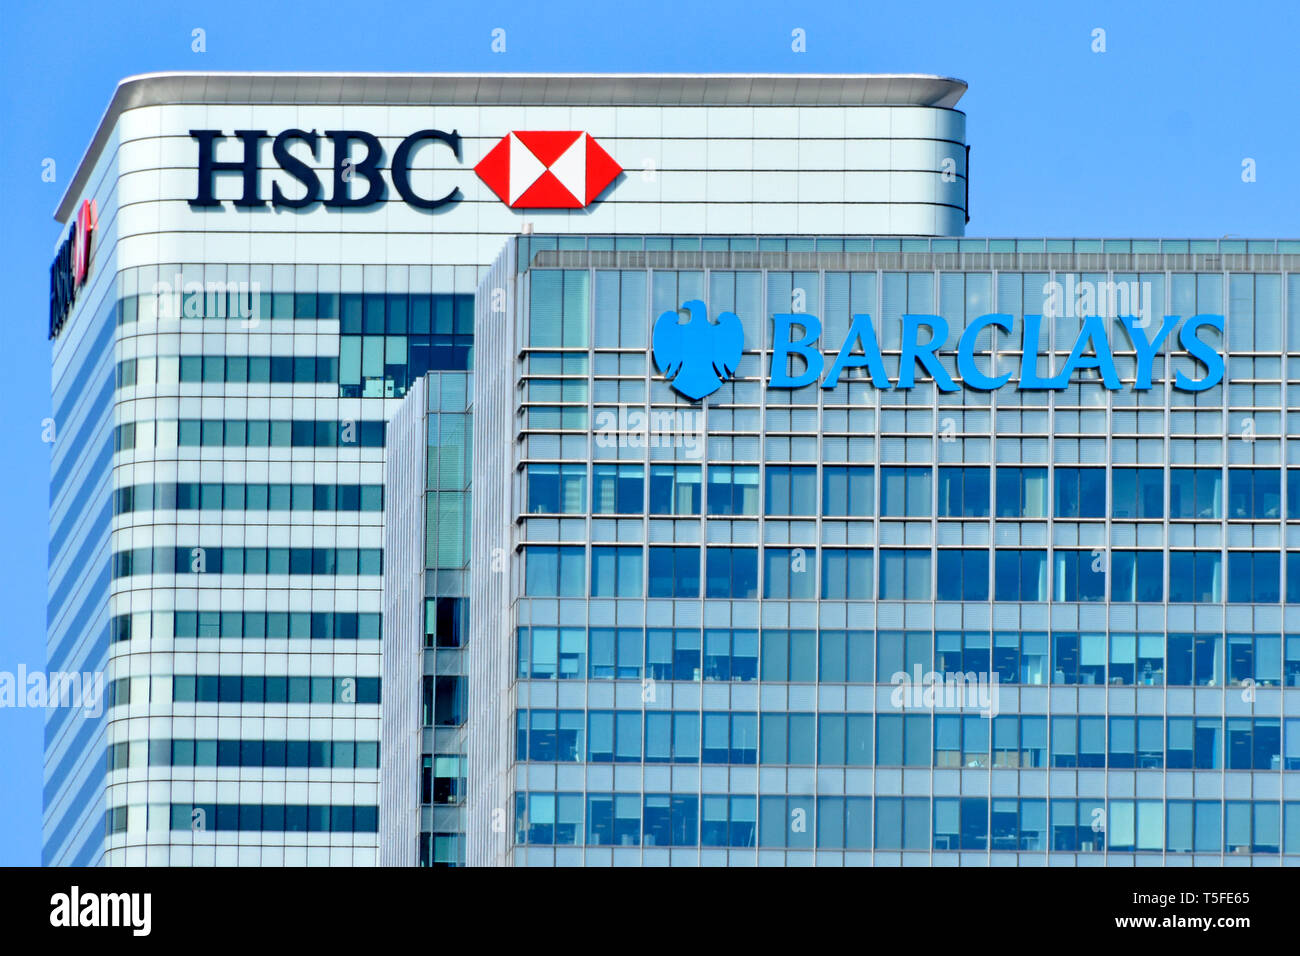 Close up sur le toit du QG de la HSBC et Barclays corporate banking business logo ci-dessus et façade fenêtre bardage répétitives Canary Wharf London Docklands UK Banque D'Images